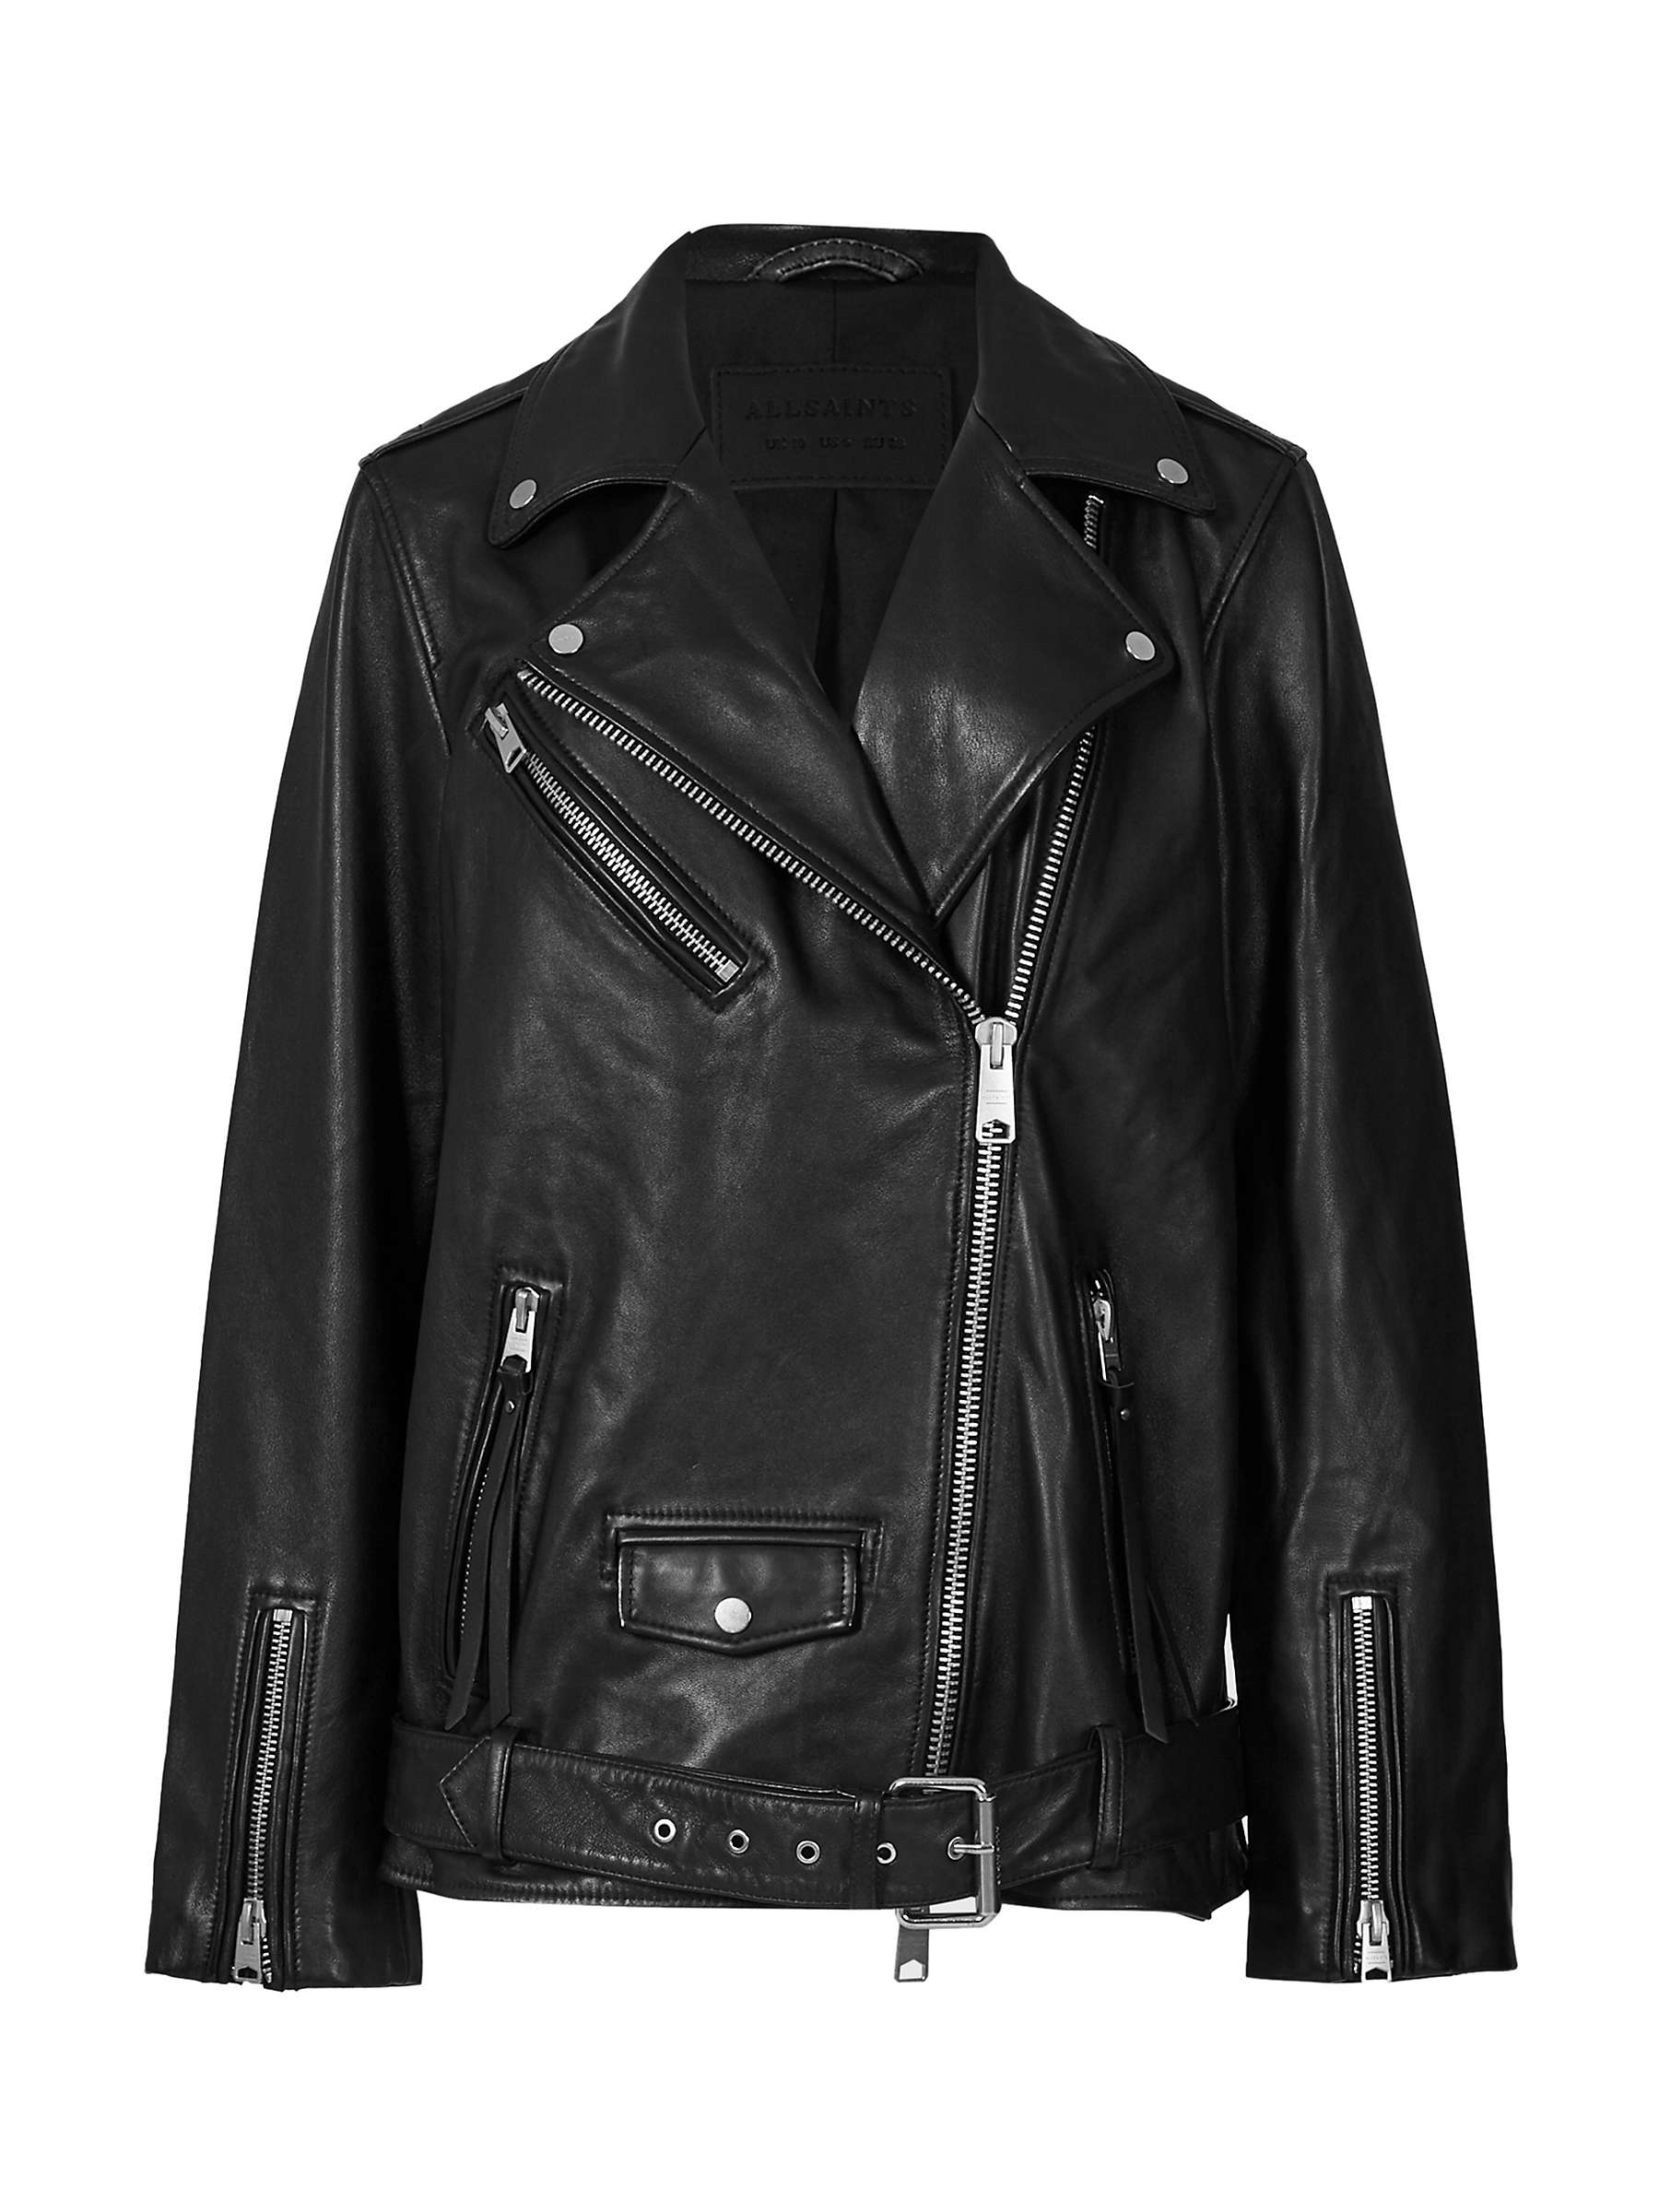 Buy AllSaints Billie Leather Biker Jacket Online at johnlewis.com